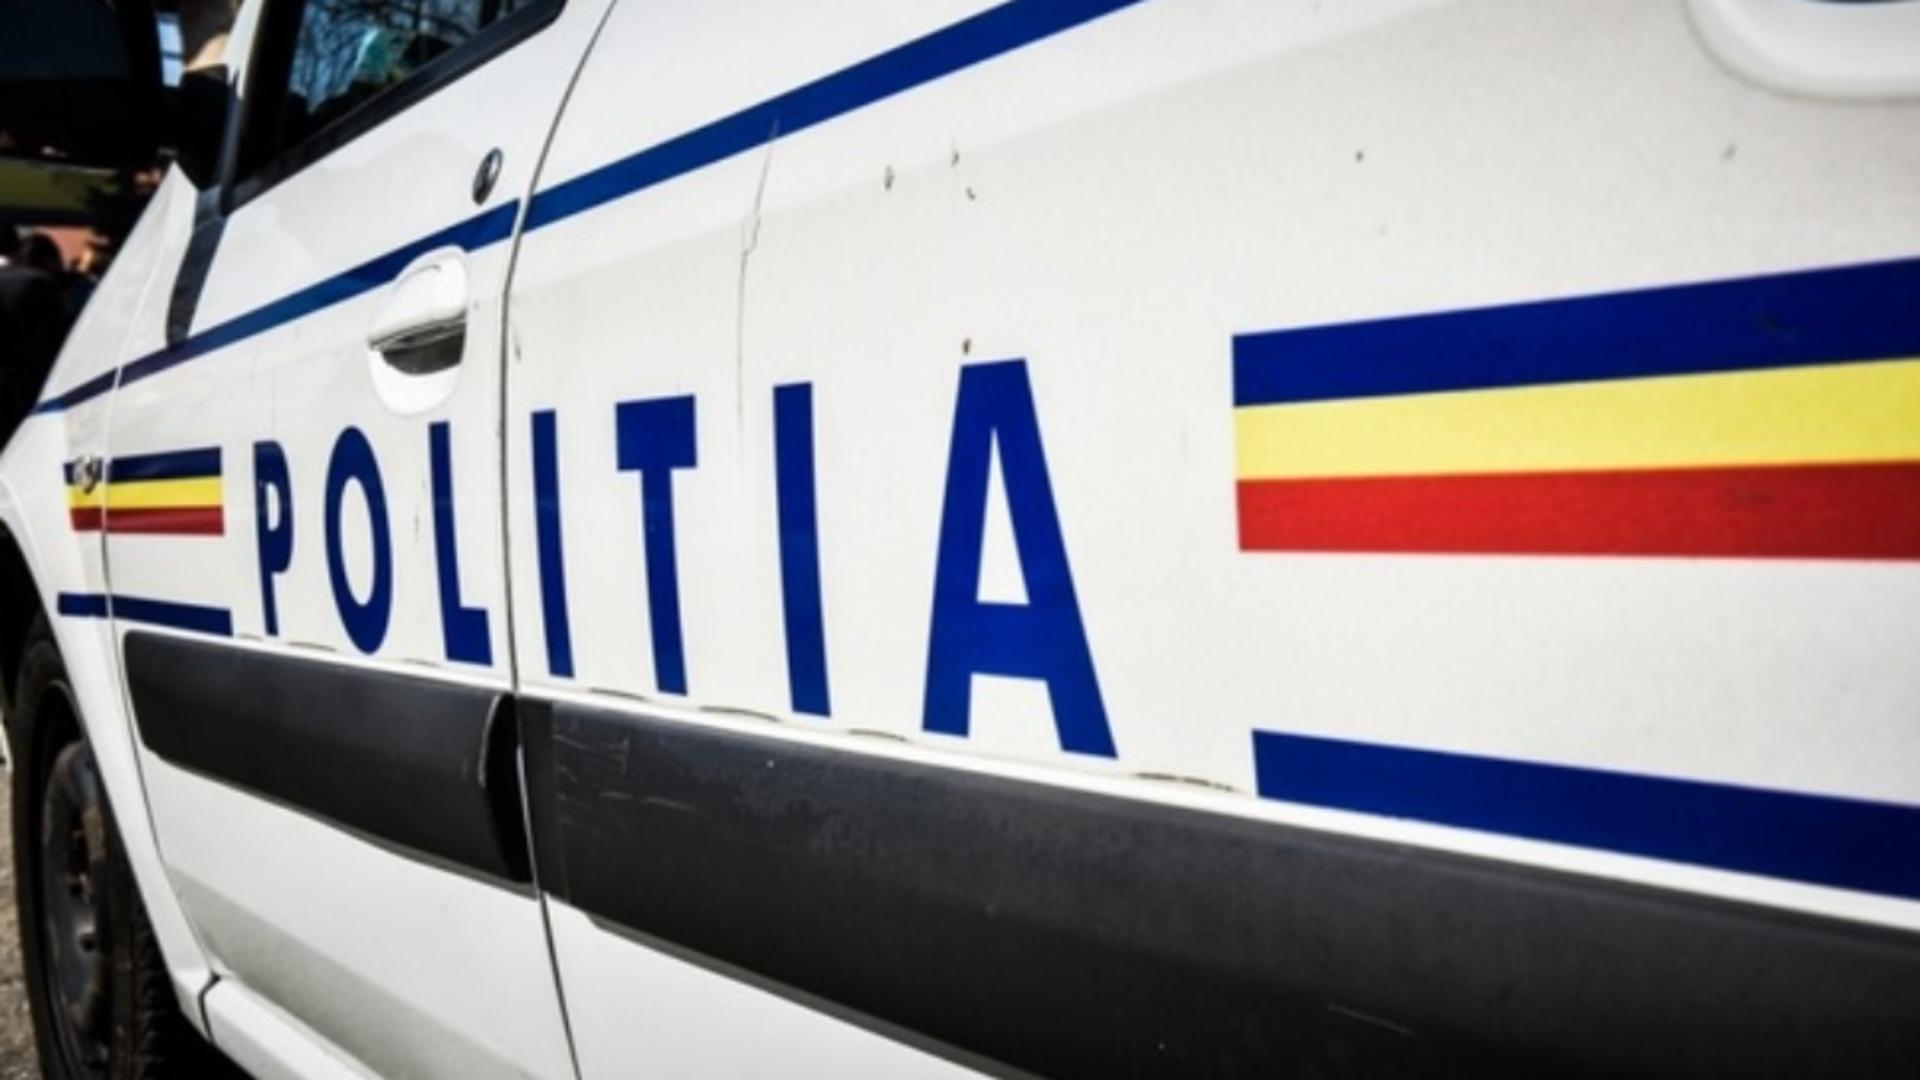 Pieton accidentat mortal de o autospecială a poliției, într-o localitate din Maramureș